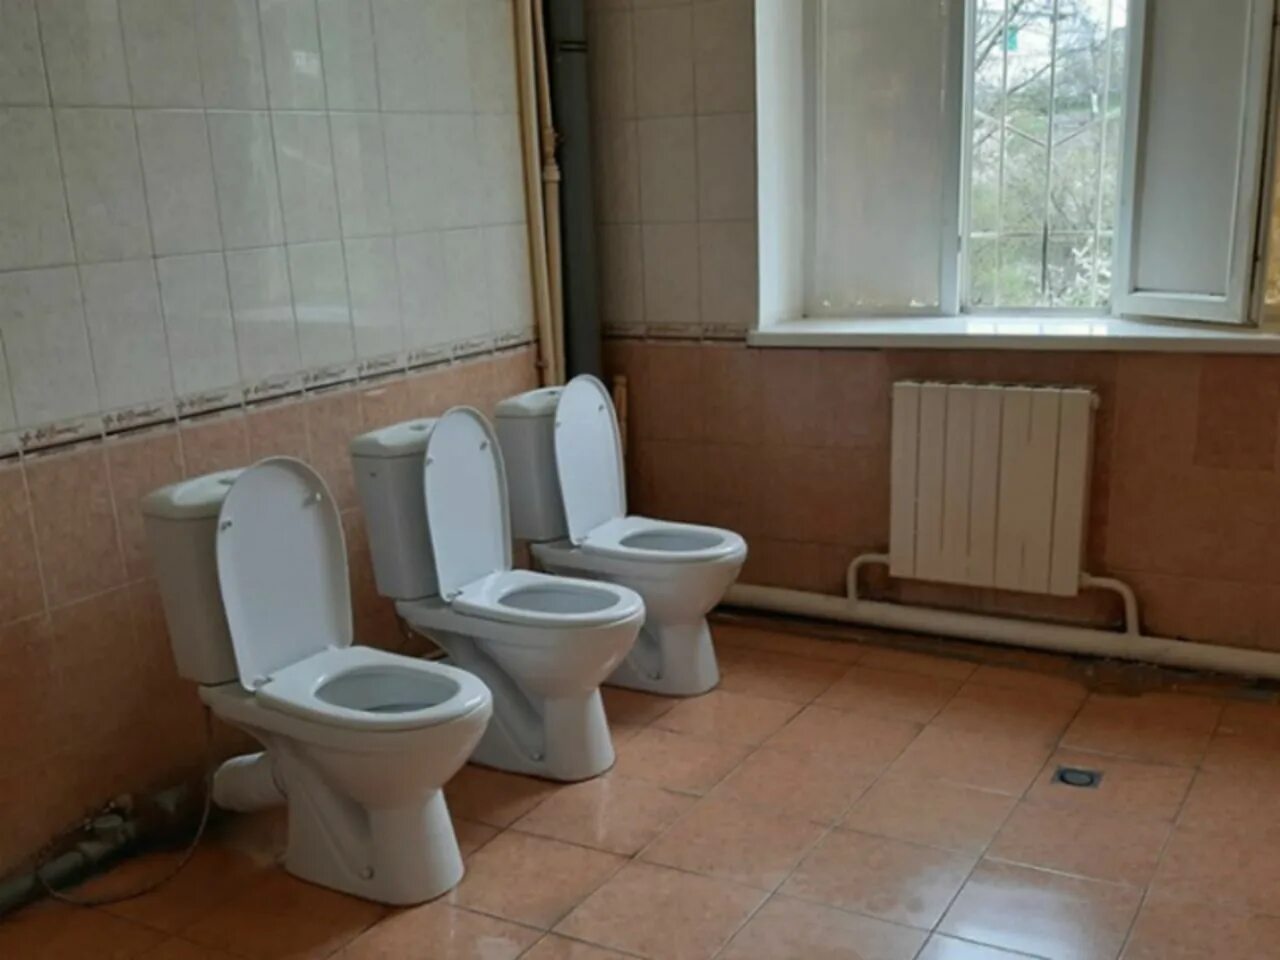 Унитаз в школе. Туалетная комната в школе. Унитазы в школьных учреждениях. Советские унитазы в школе. Какие туалеты в школе